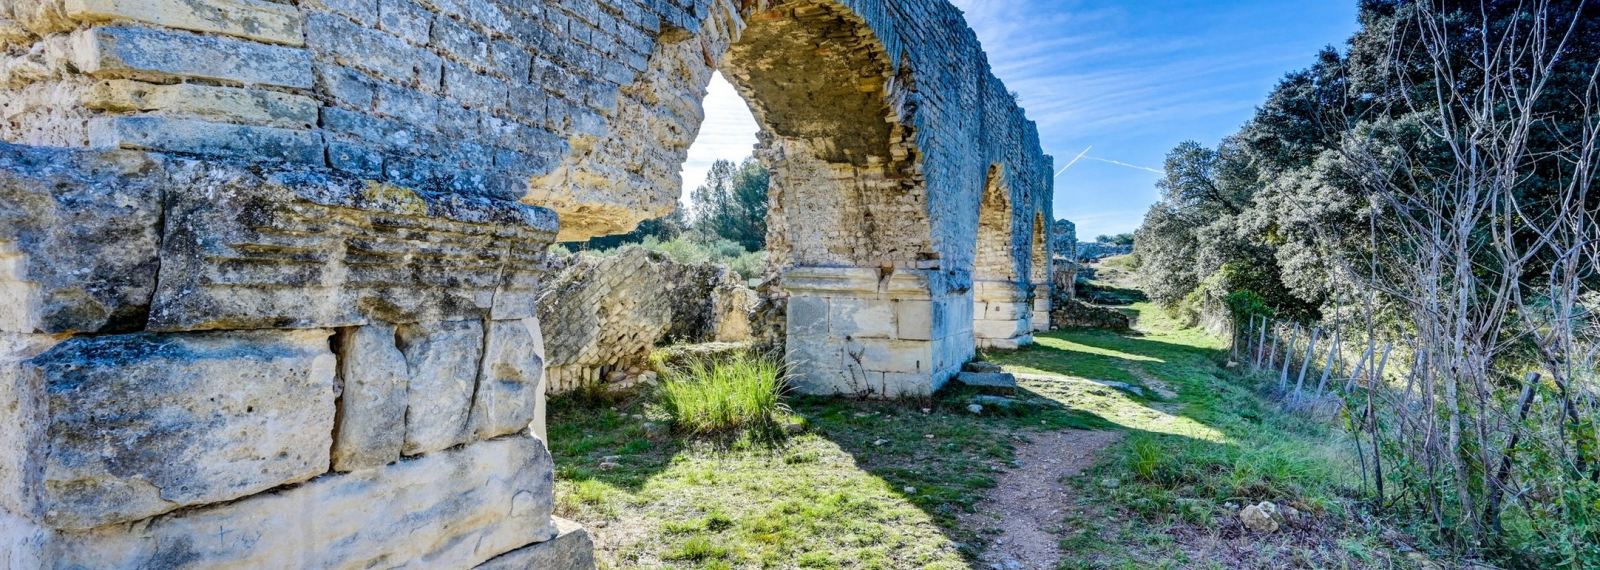 Roman aqueducts of Barbegal